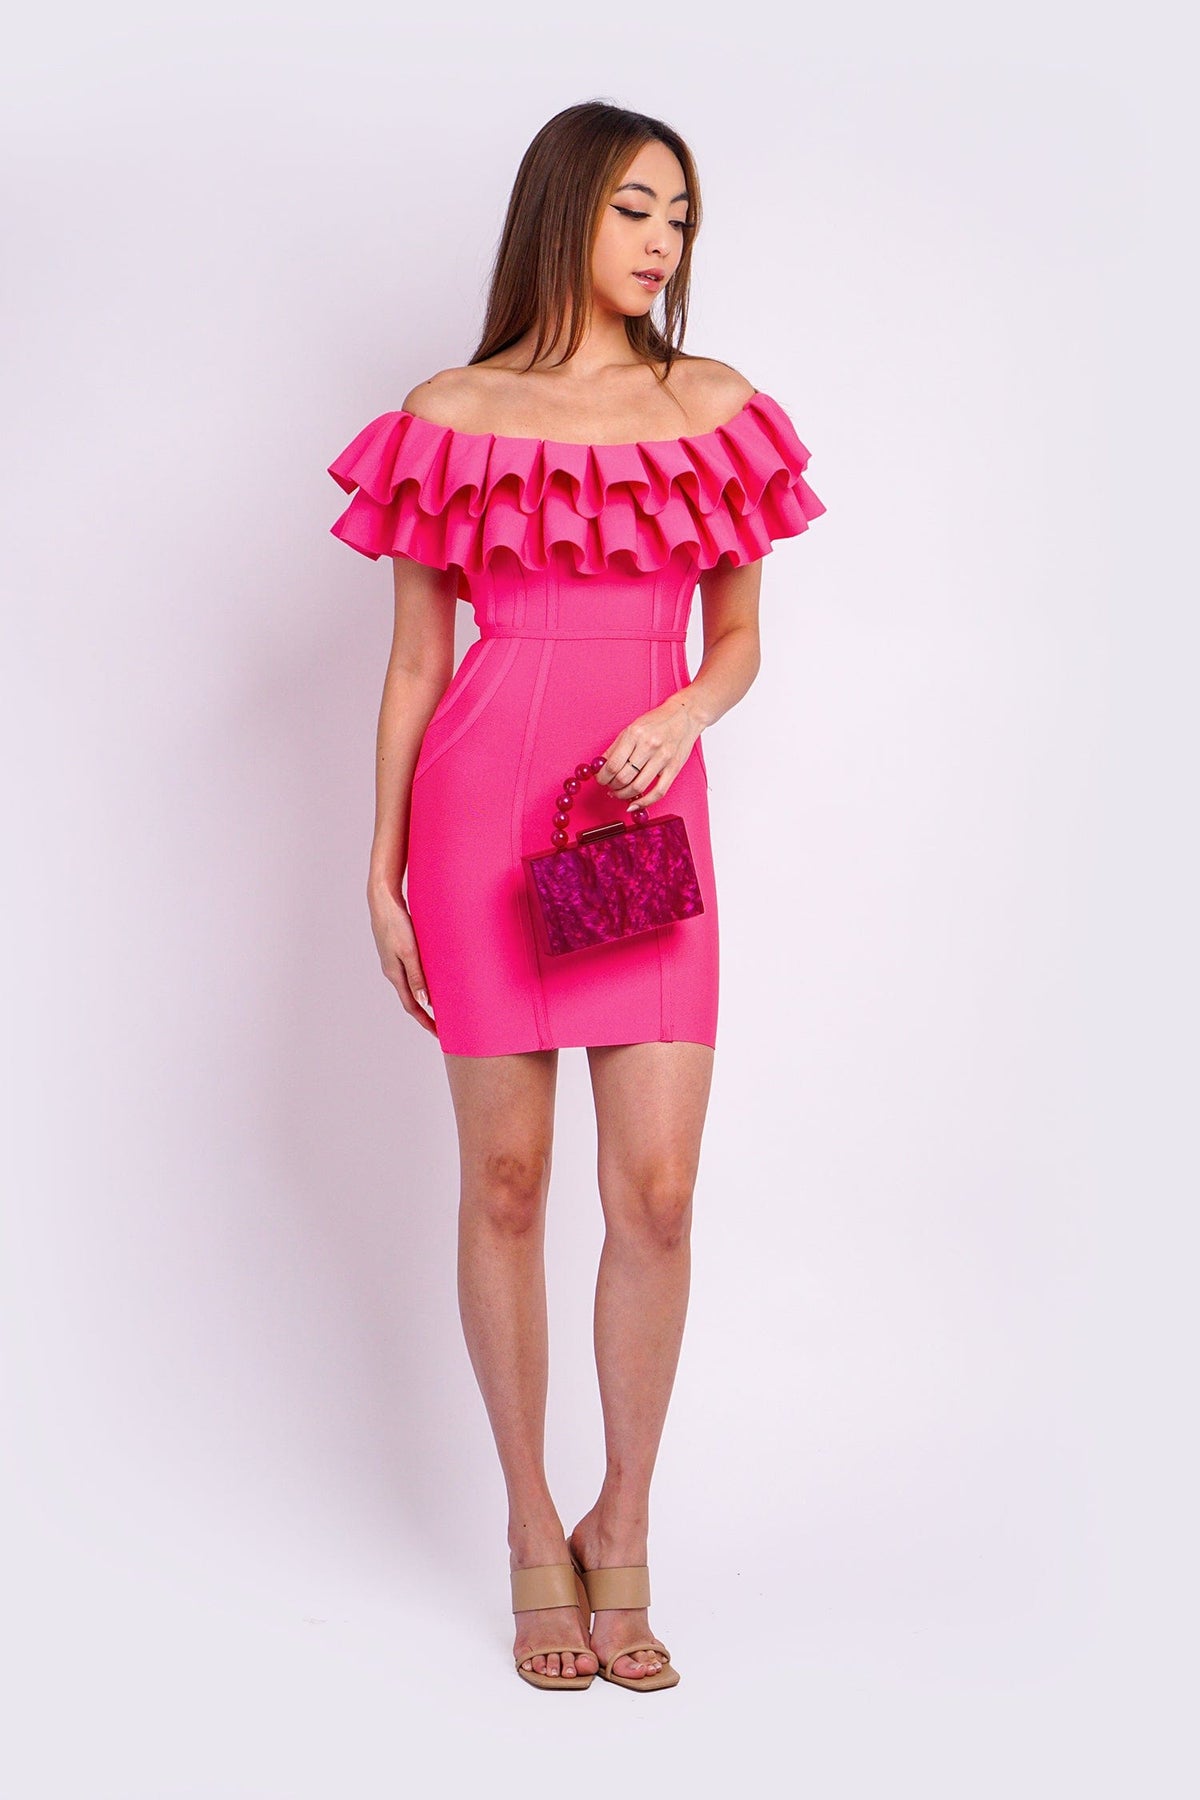 DCD DRESSES Hot Pink Off Shoulder Knit Dress